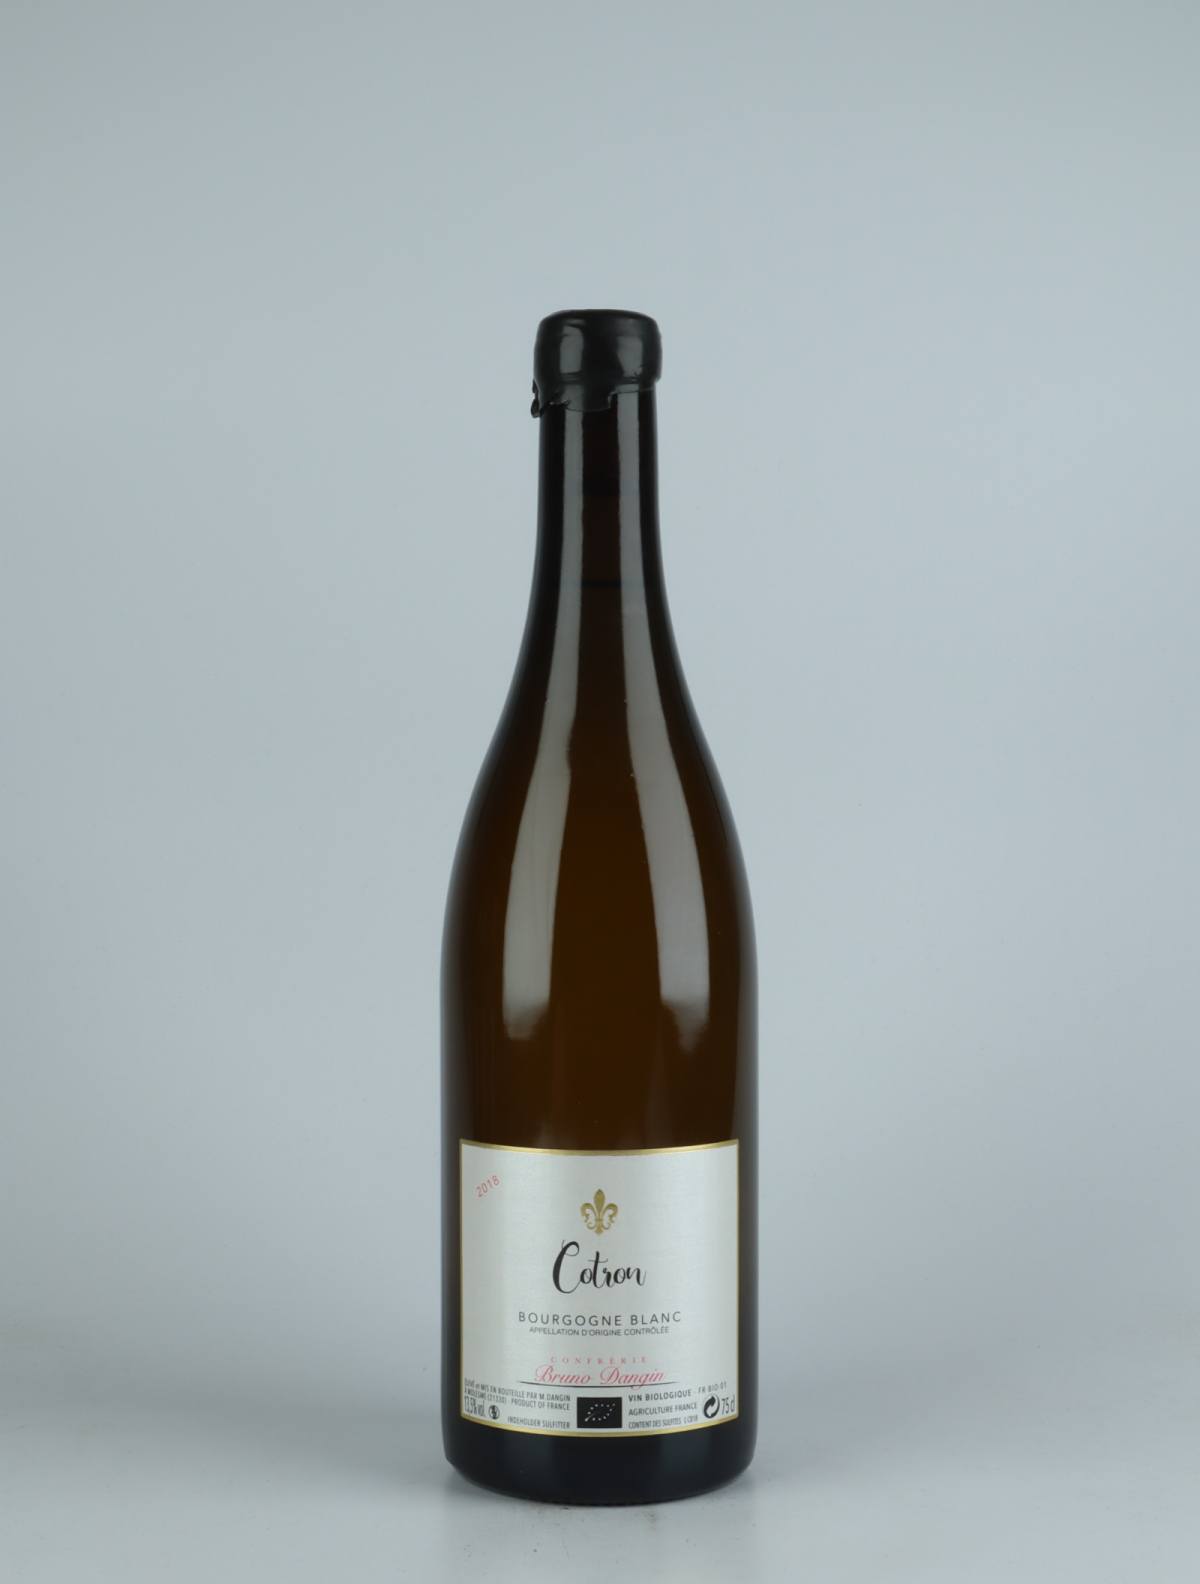 En flaske 2018 Bourgogne Blanc - Cotron Hvidvin fra Domaine Bruno Dangin, Bourgogne i Frankrig